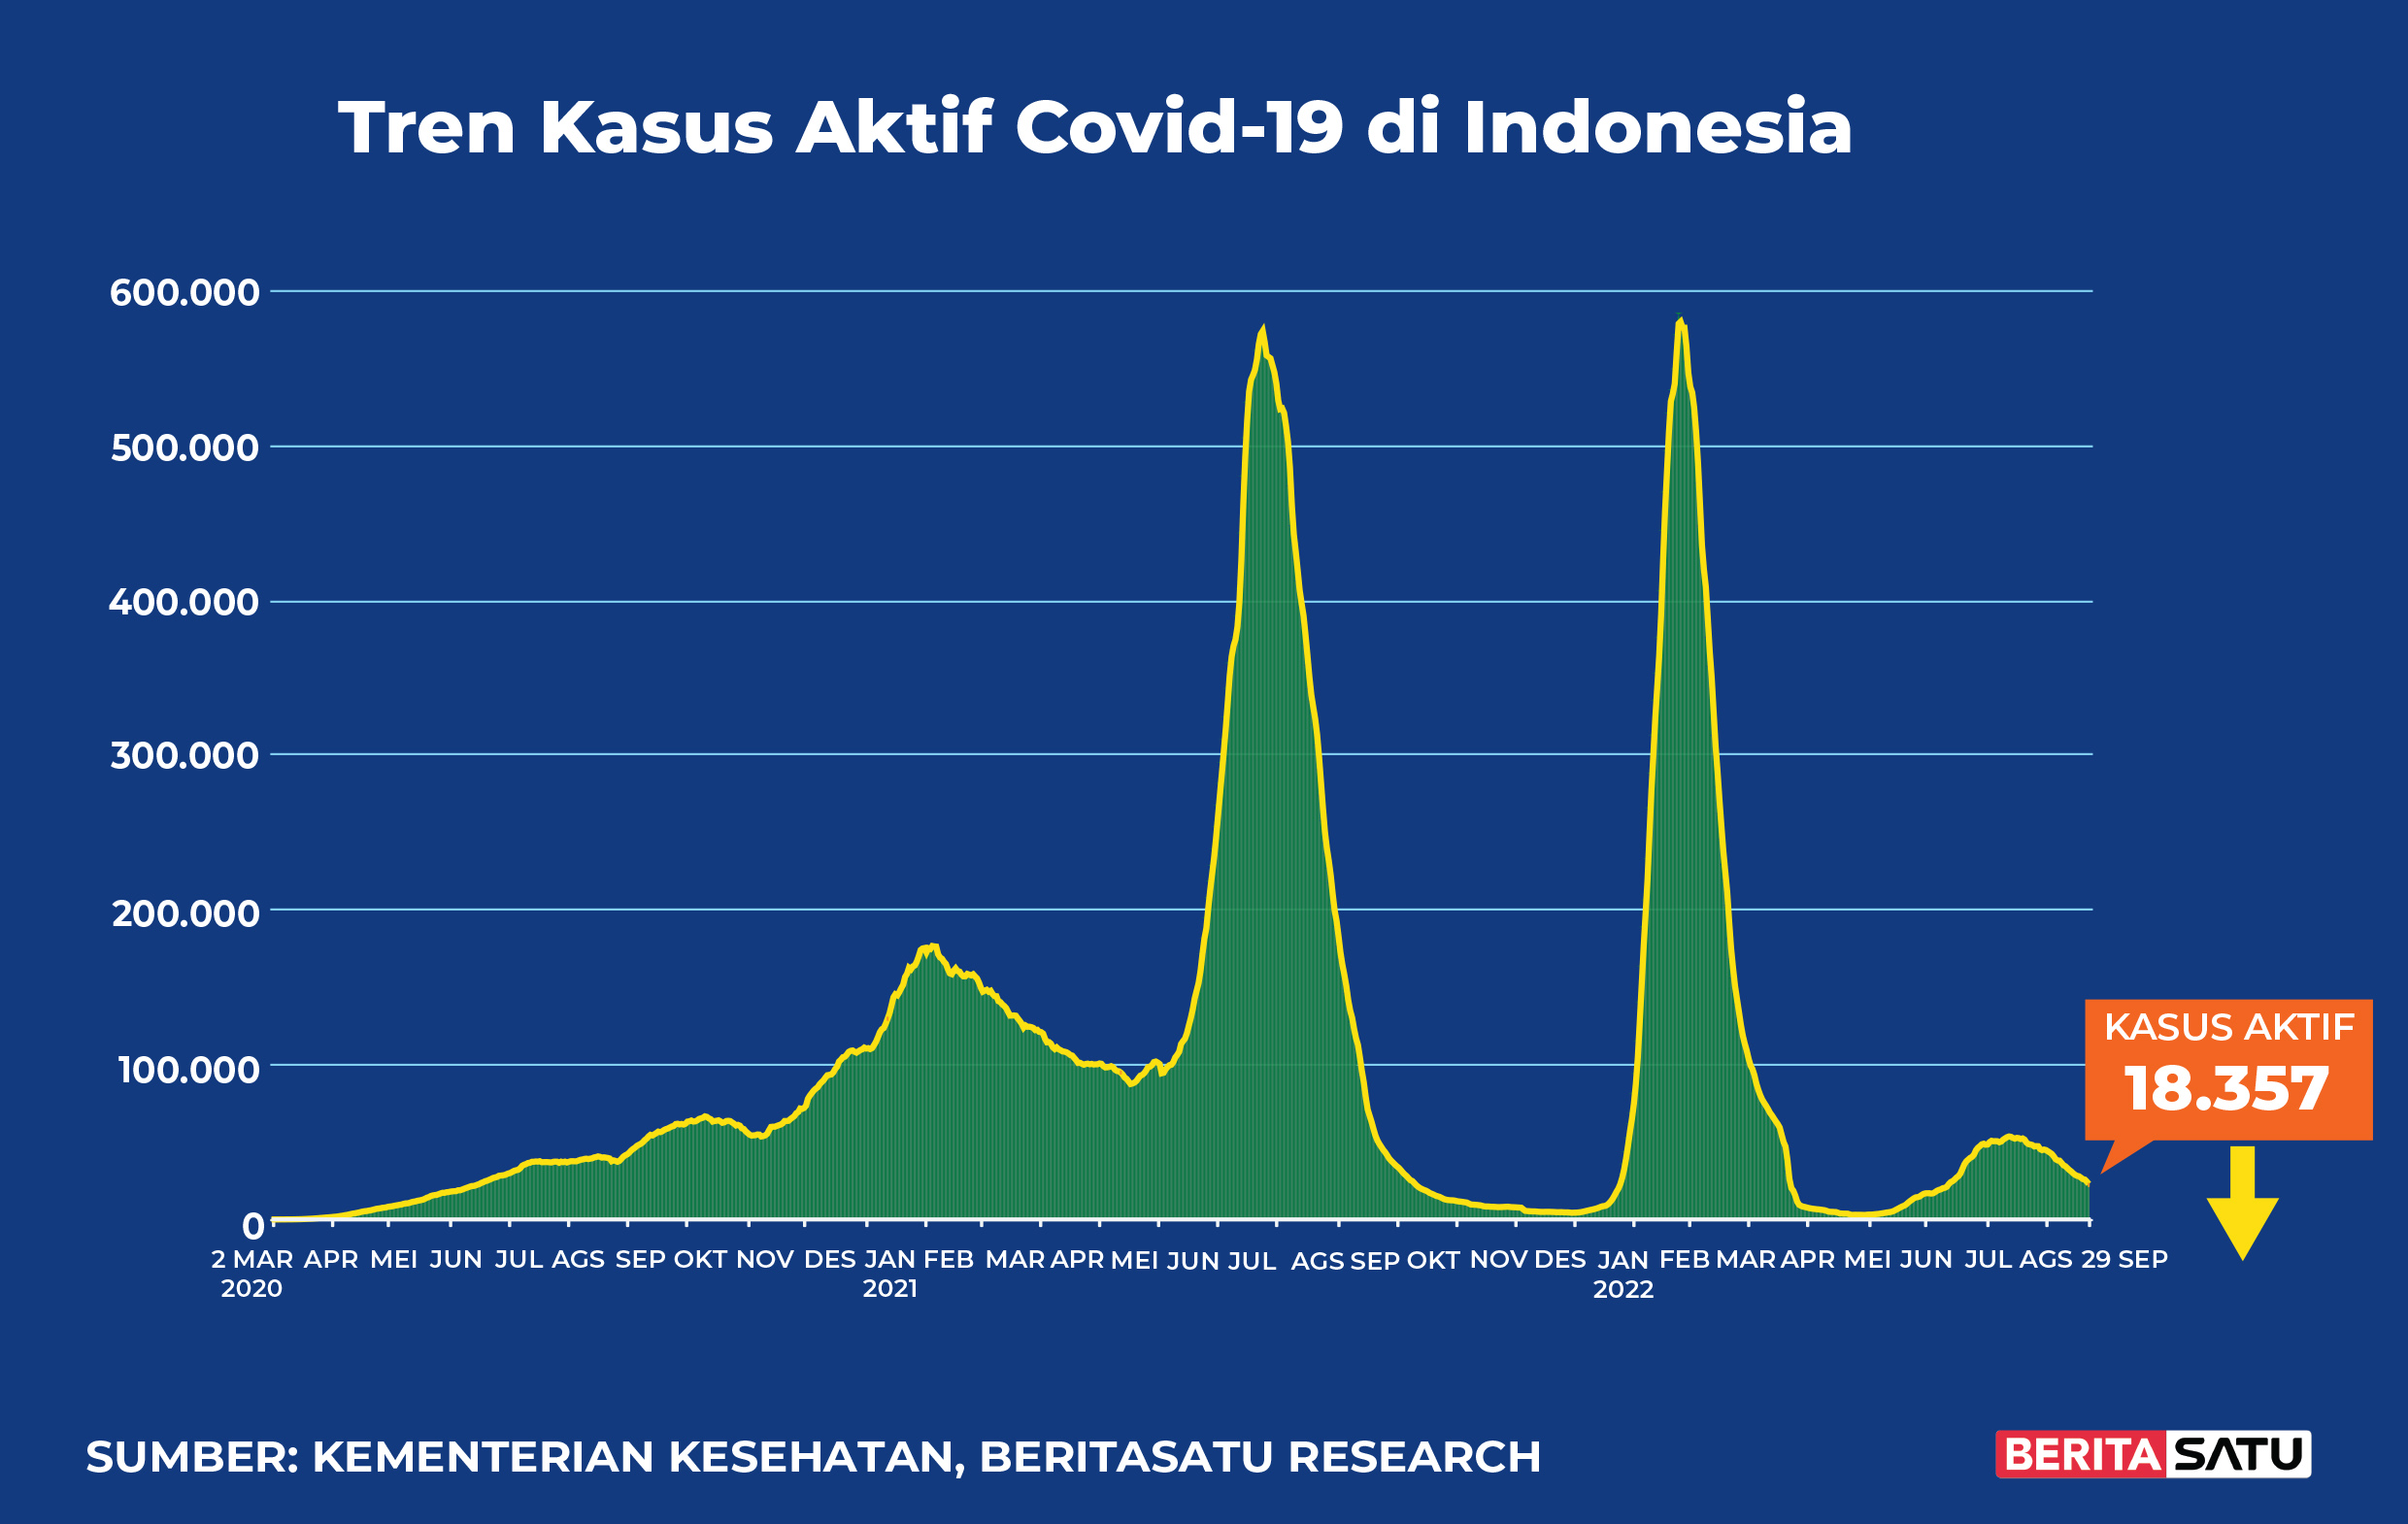 Kasus Aktif Covid-19 di Indonesia sampai 29 September 2022